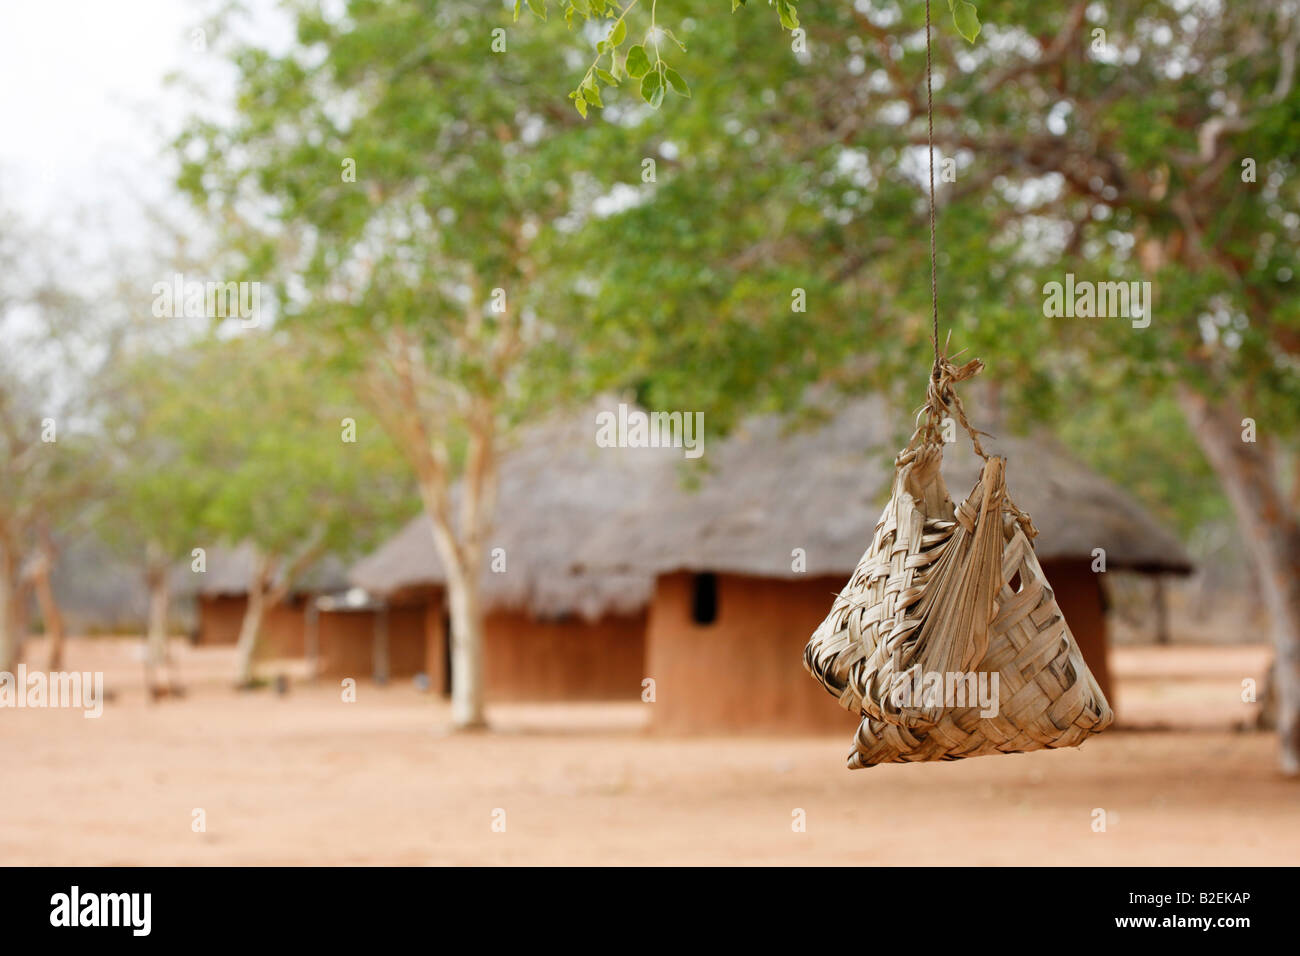 Handgewebte Palmblatt Taschen hängen unter einem Baum in einem lokalen Dorf vor dem Hintergrund einer Reihe von Hütten in einem afrikanischen Dorf Stockfoto